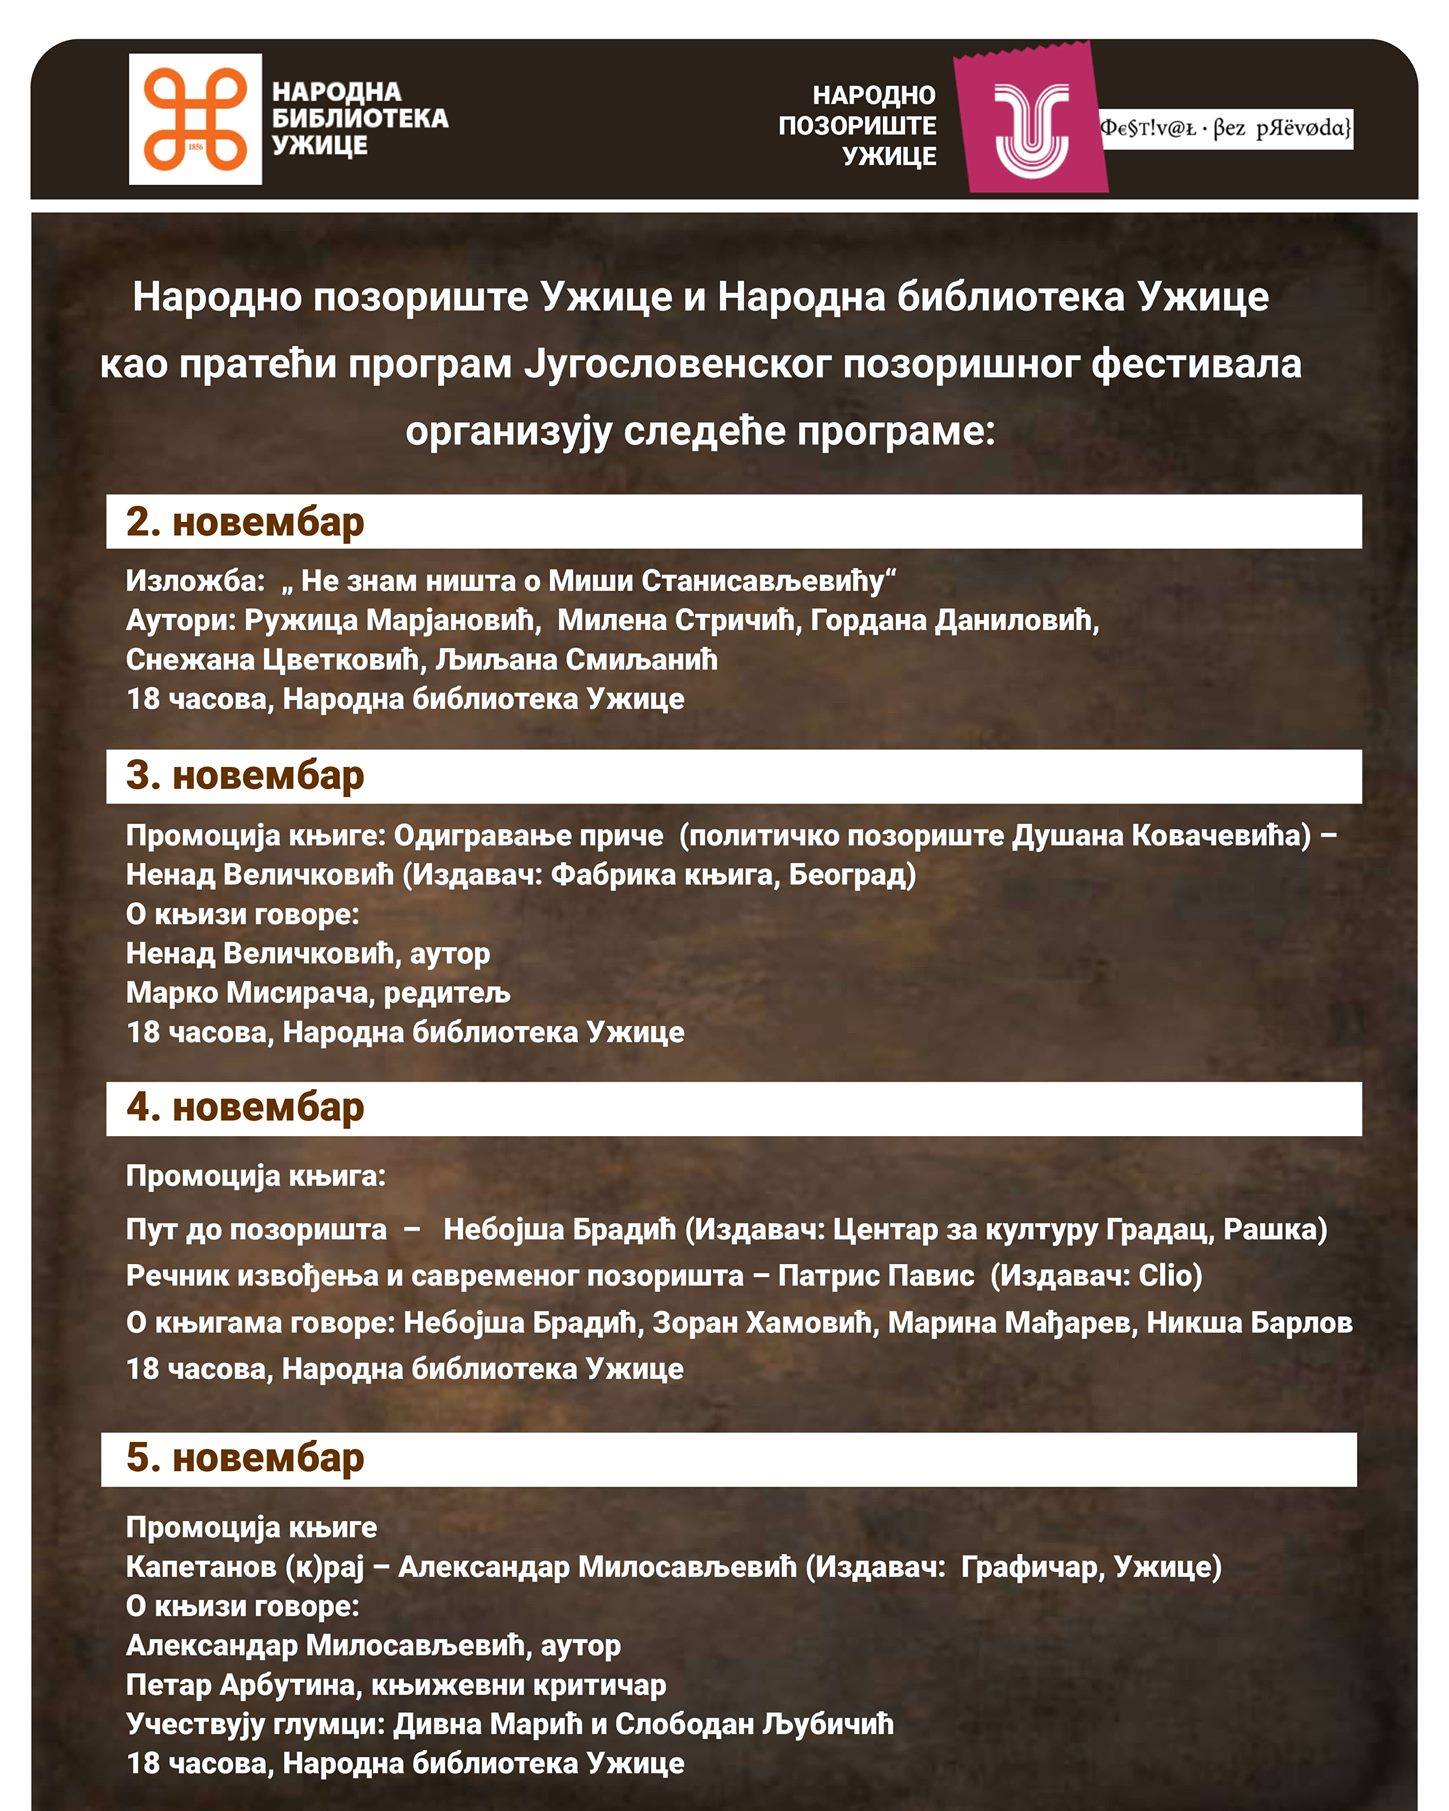 Пратећи програми Југословенског позоришног фестивала